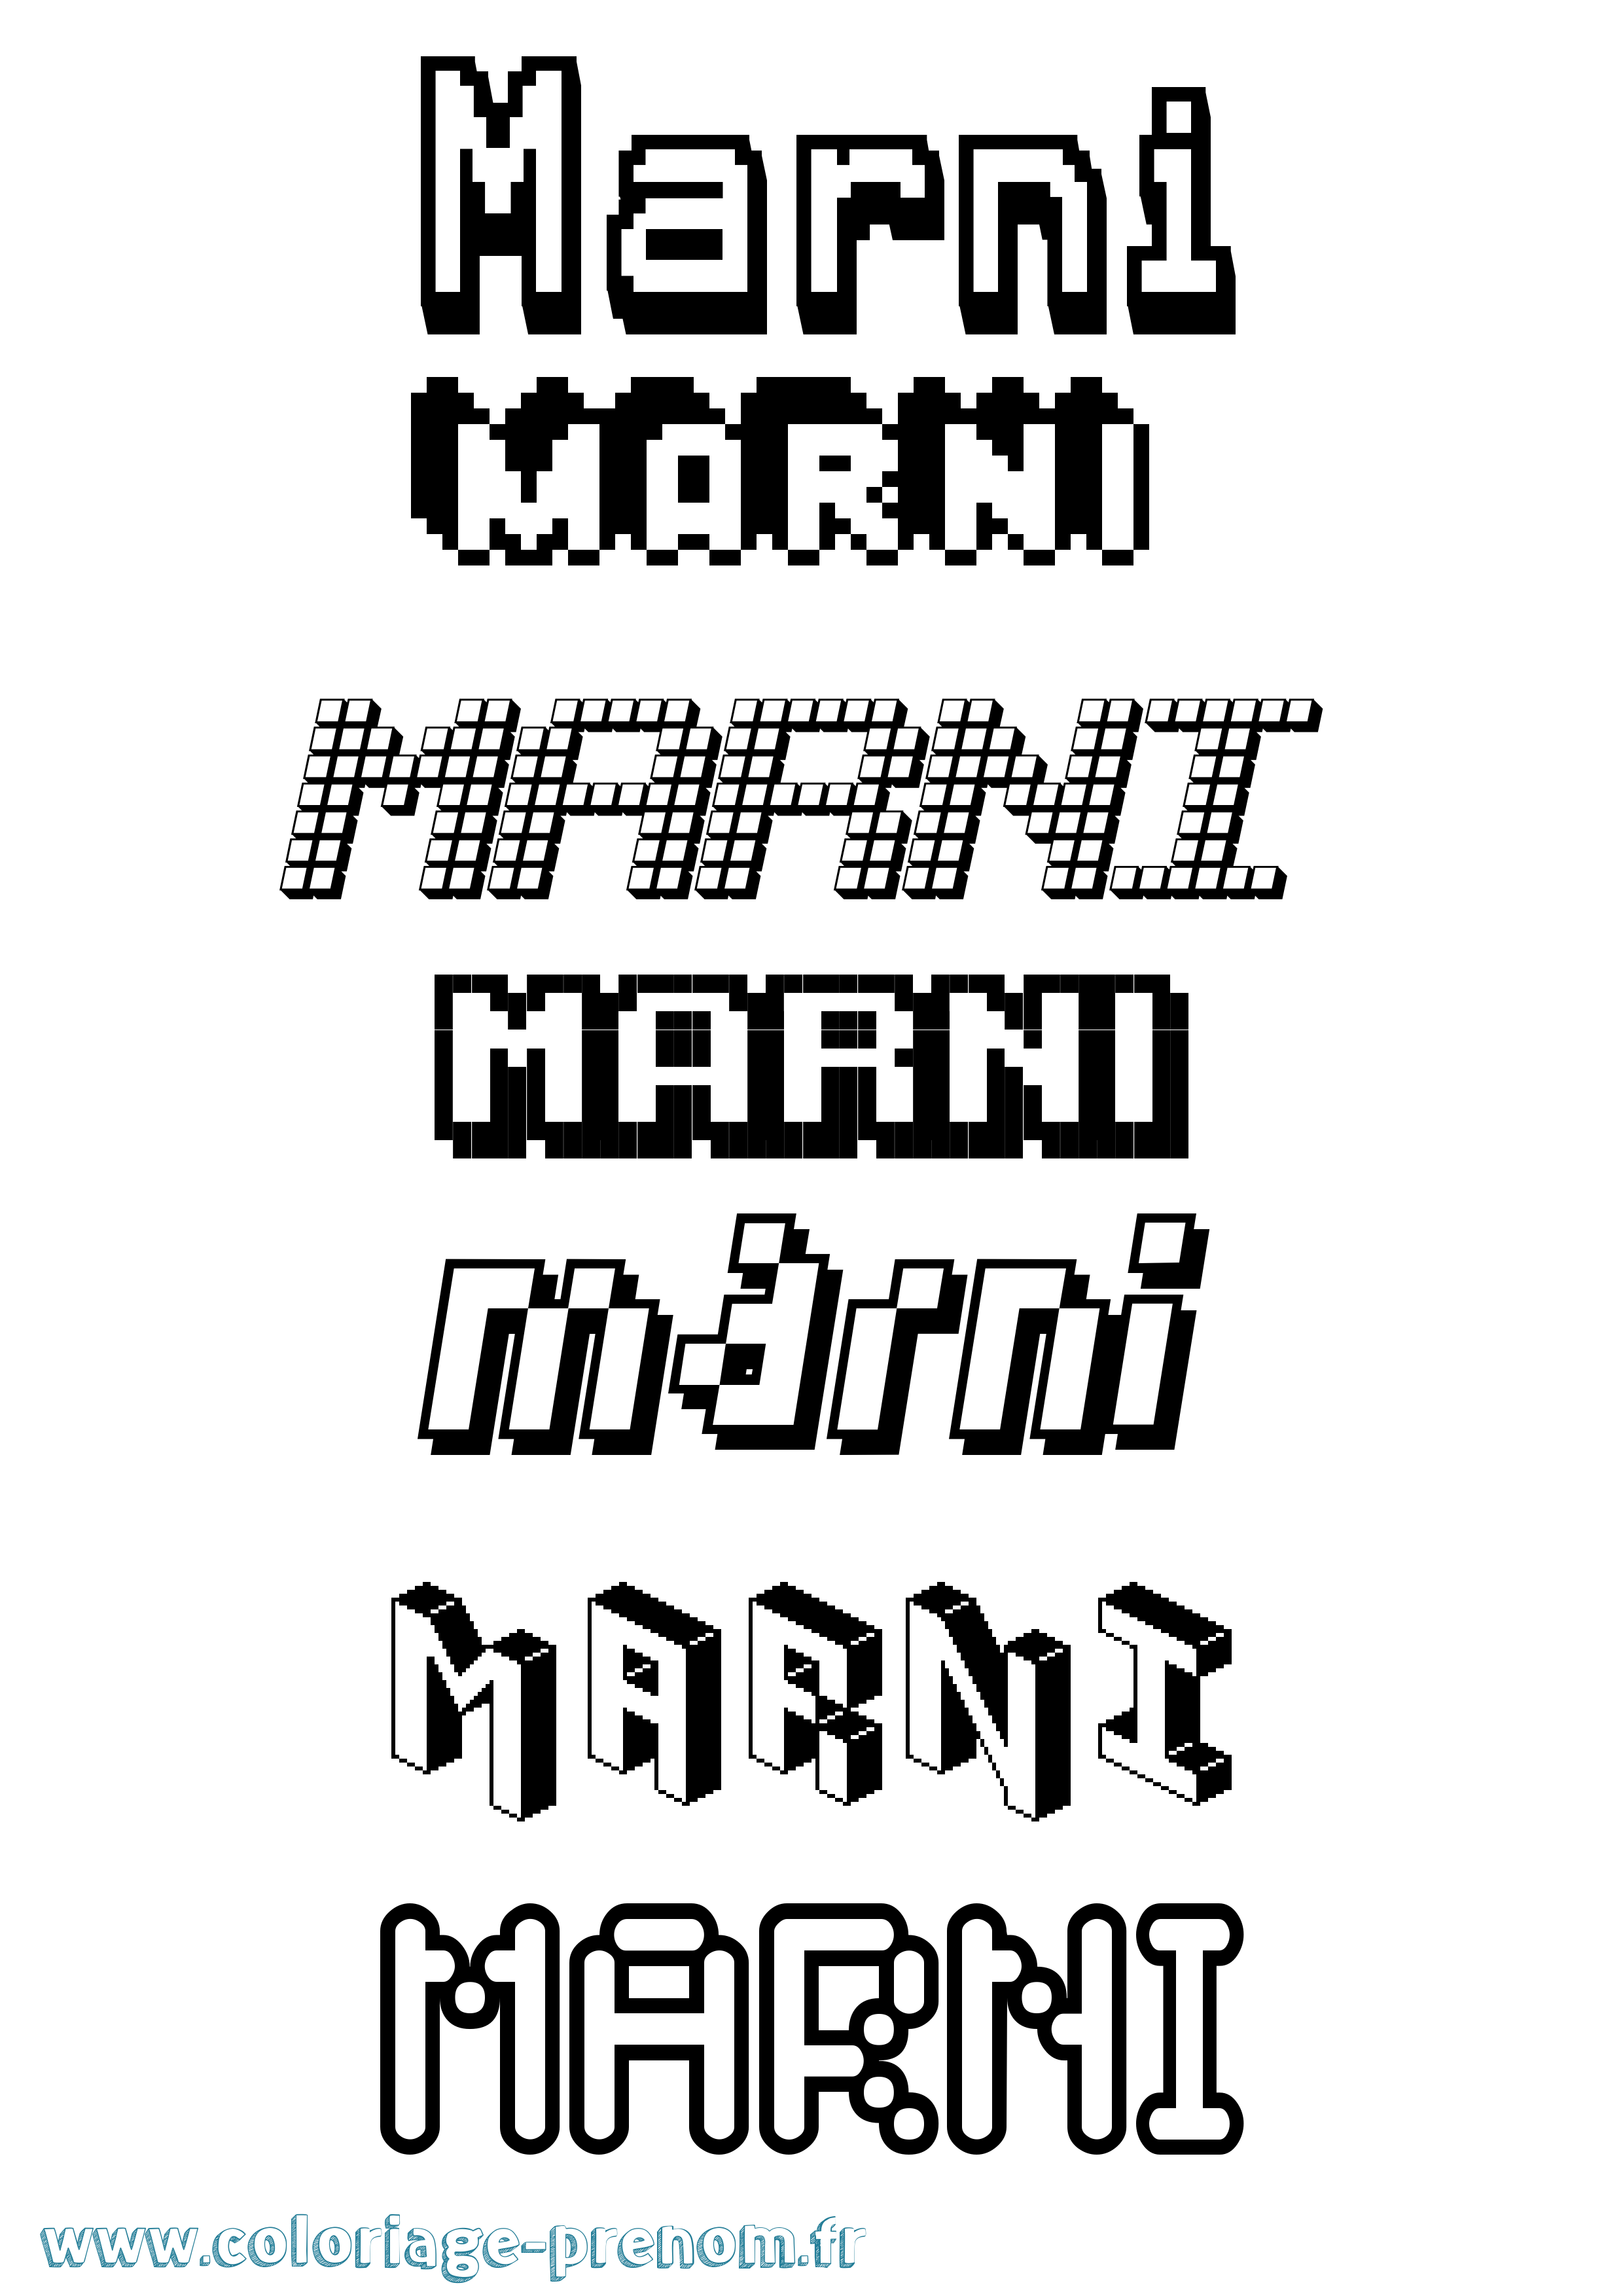 Coloriage prénom Marni Pixel